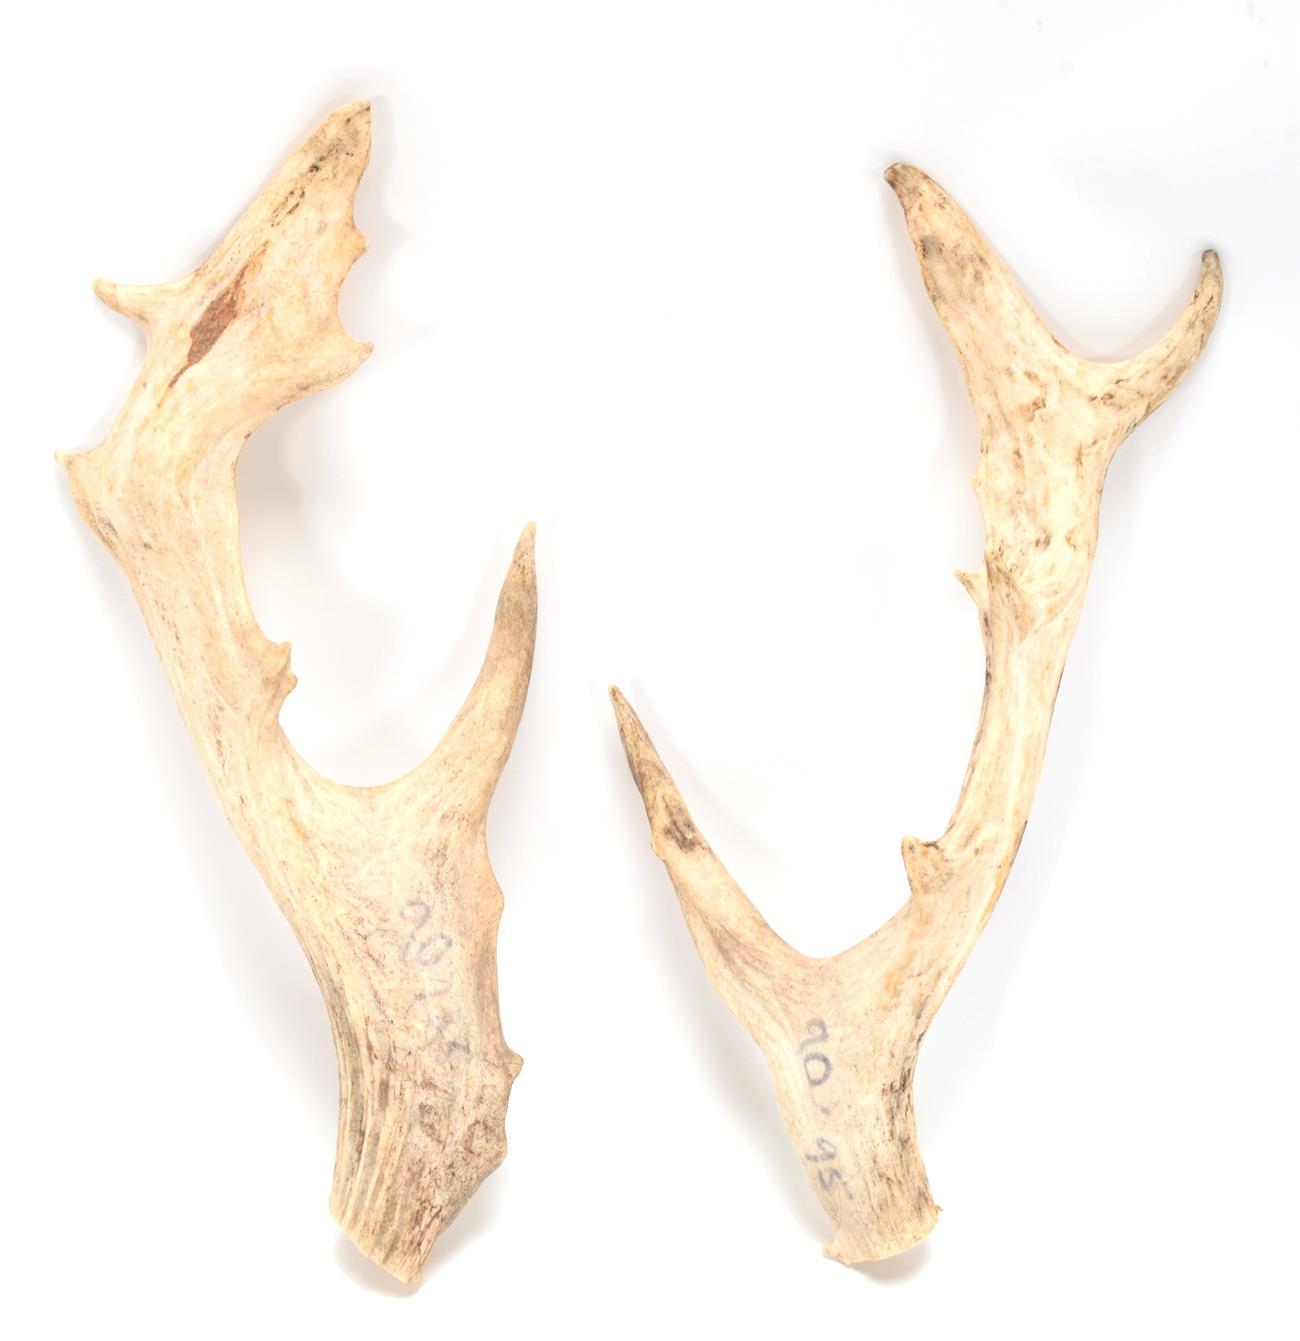 Lot 92 - Antlers/Horns: A Pair of Persian Fallow Deer Antlers (Dama dama mesopotamica), a pair of loose...